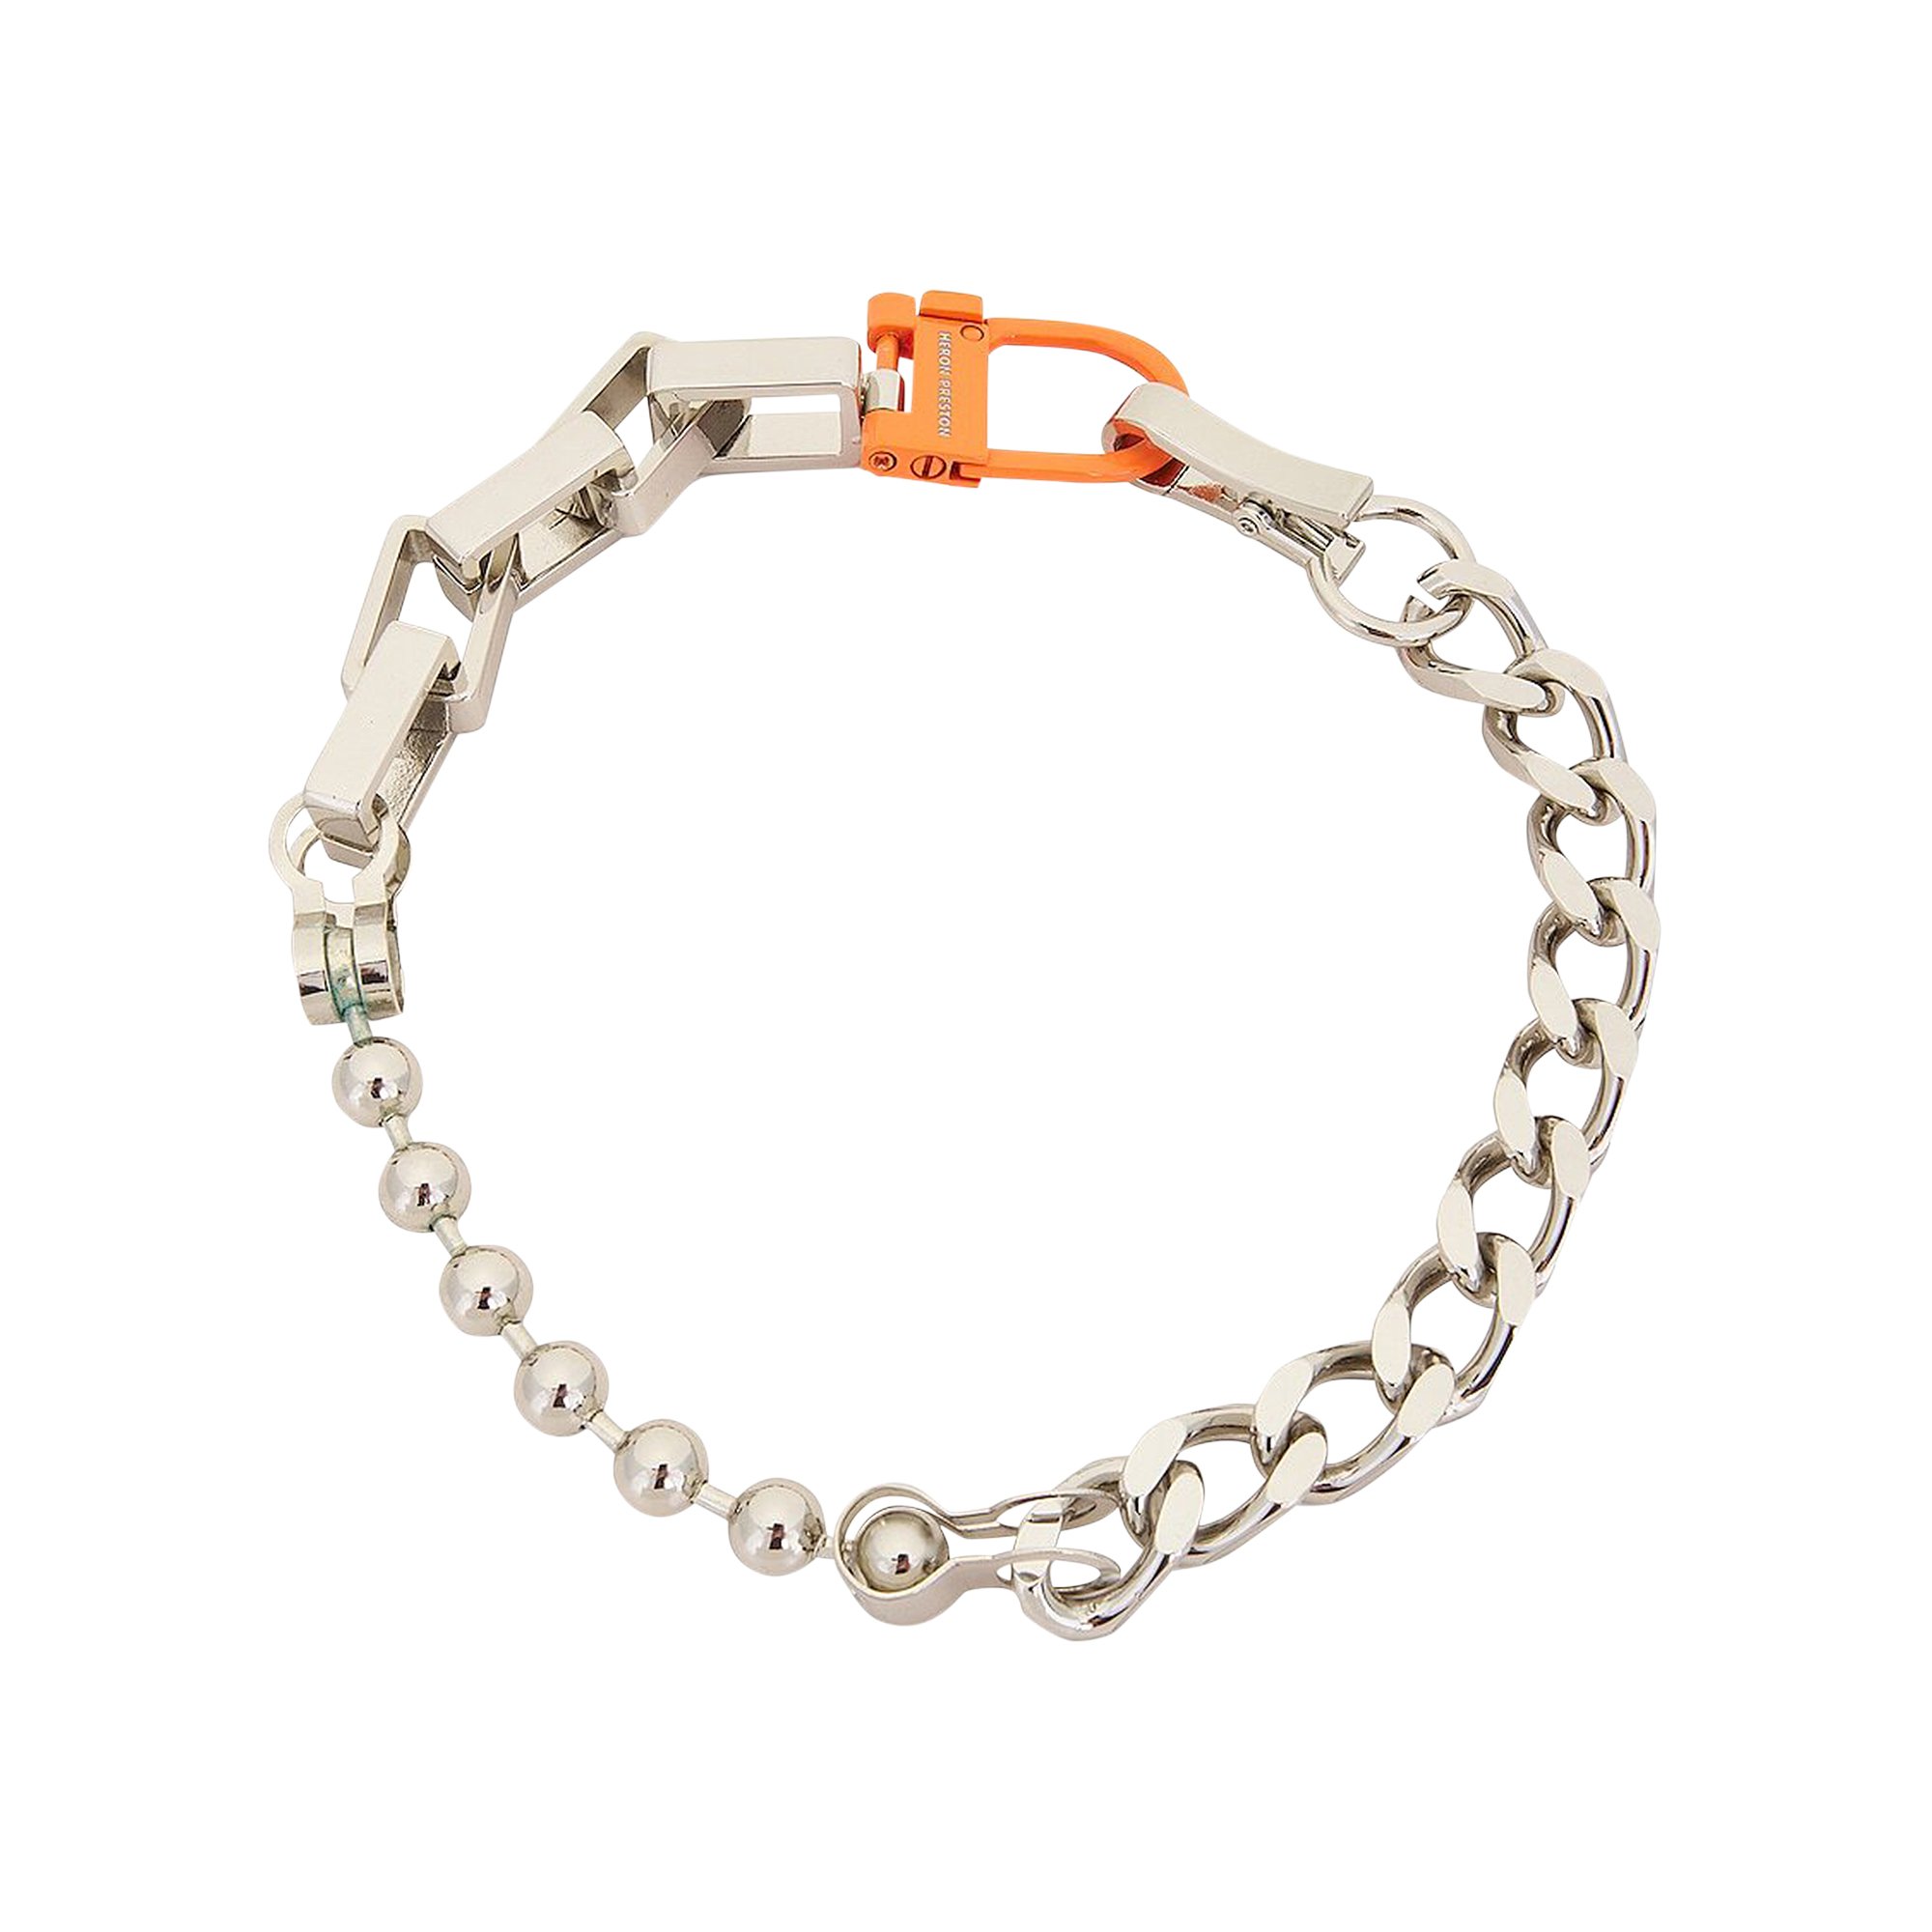 Buy Heron Preston Multi Chain Square Necklace 'Silver/Orange 